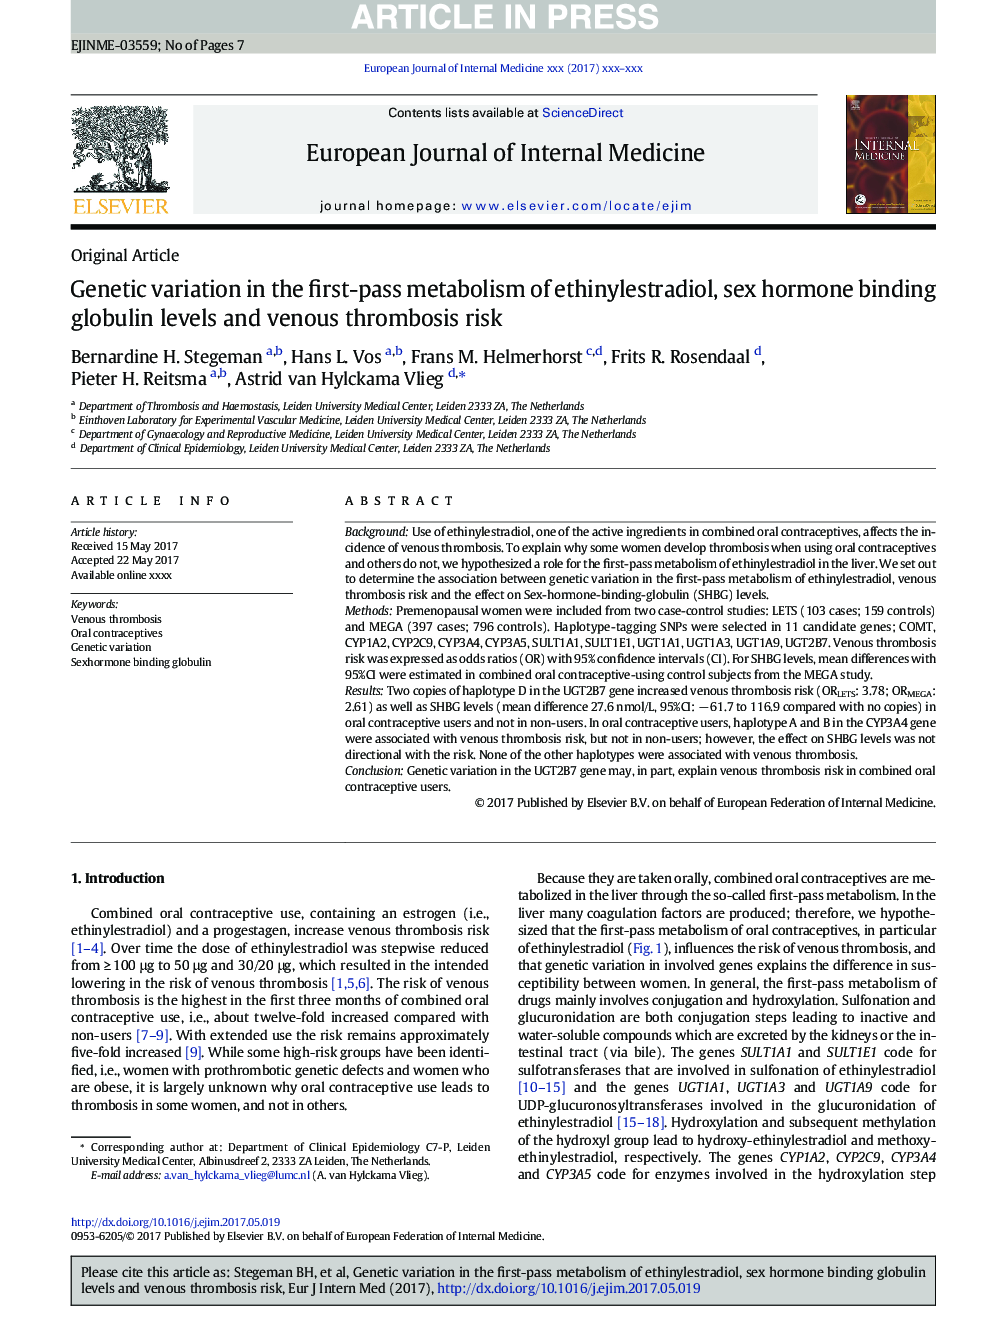 تنوع ژنتیکی در متابولیسم اولیه اتینیل استرادیول، سطح هورمون متصل به گلوبولین و خطر ترومبوز وریدی 